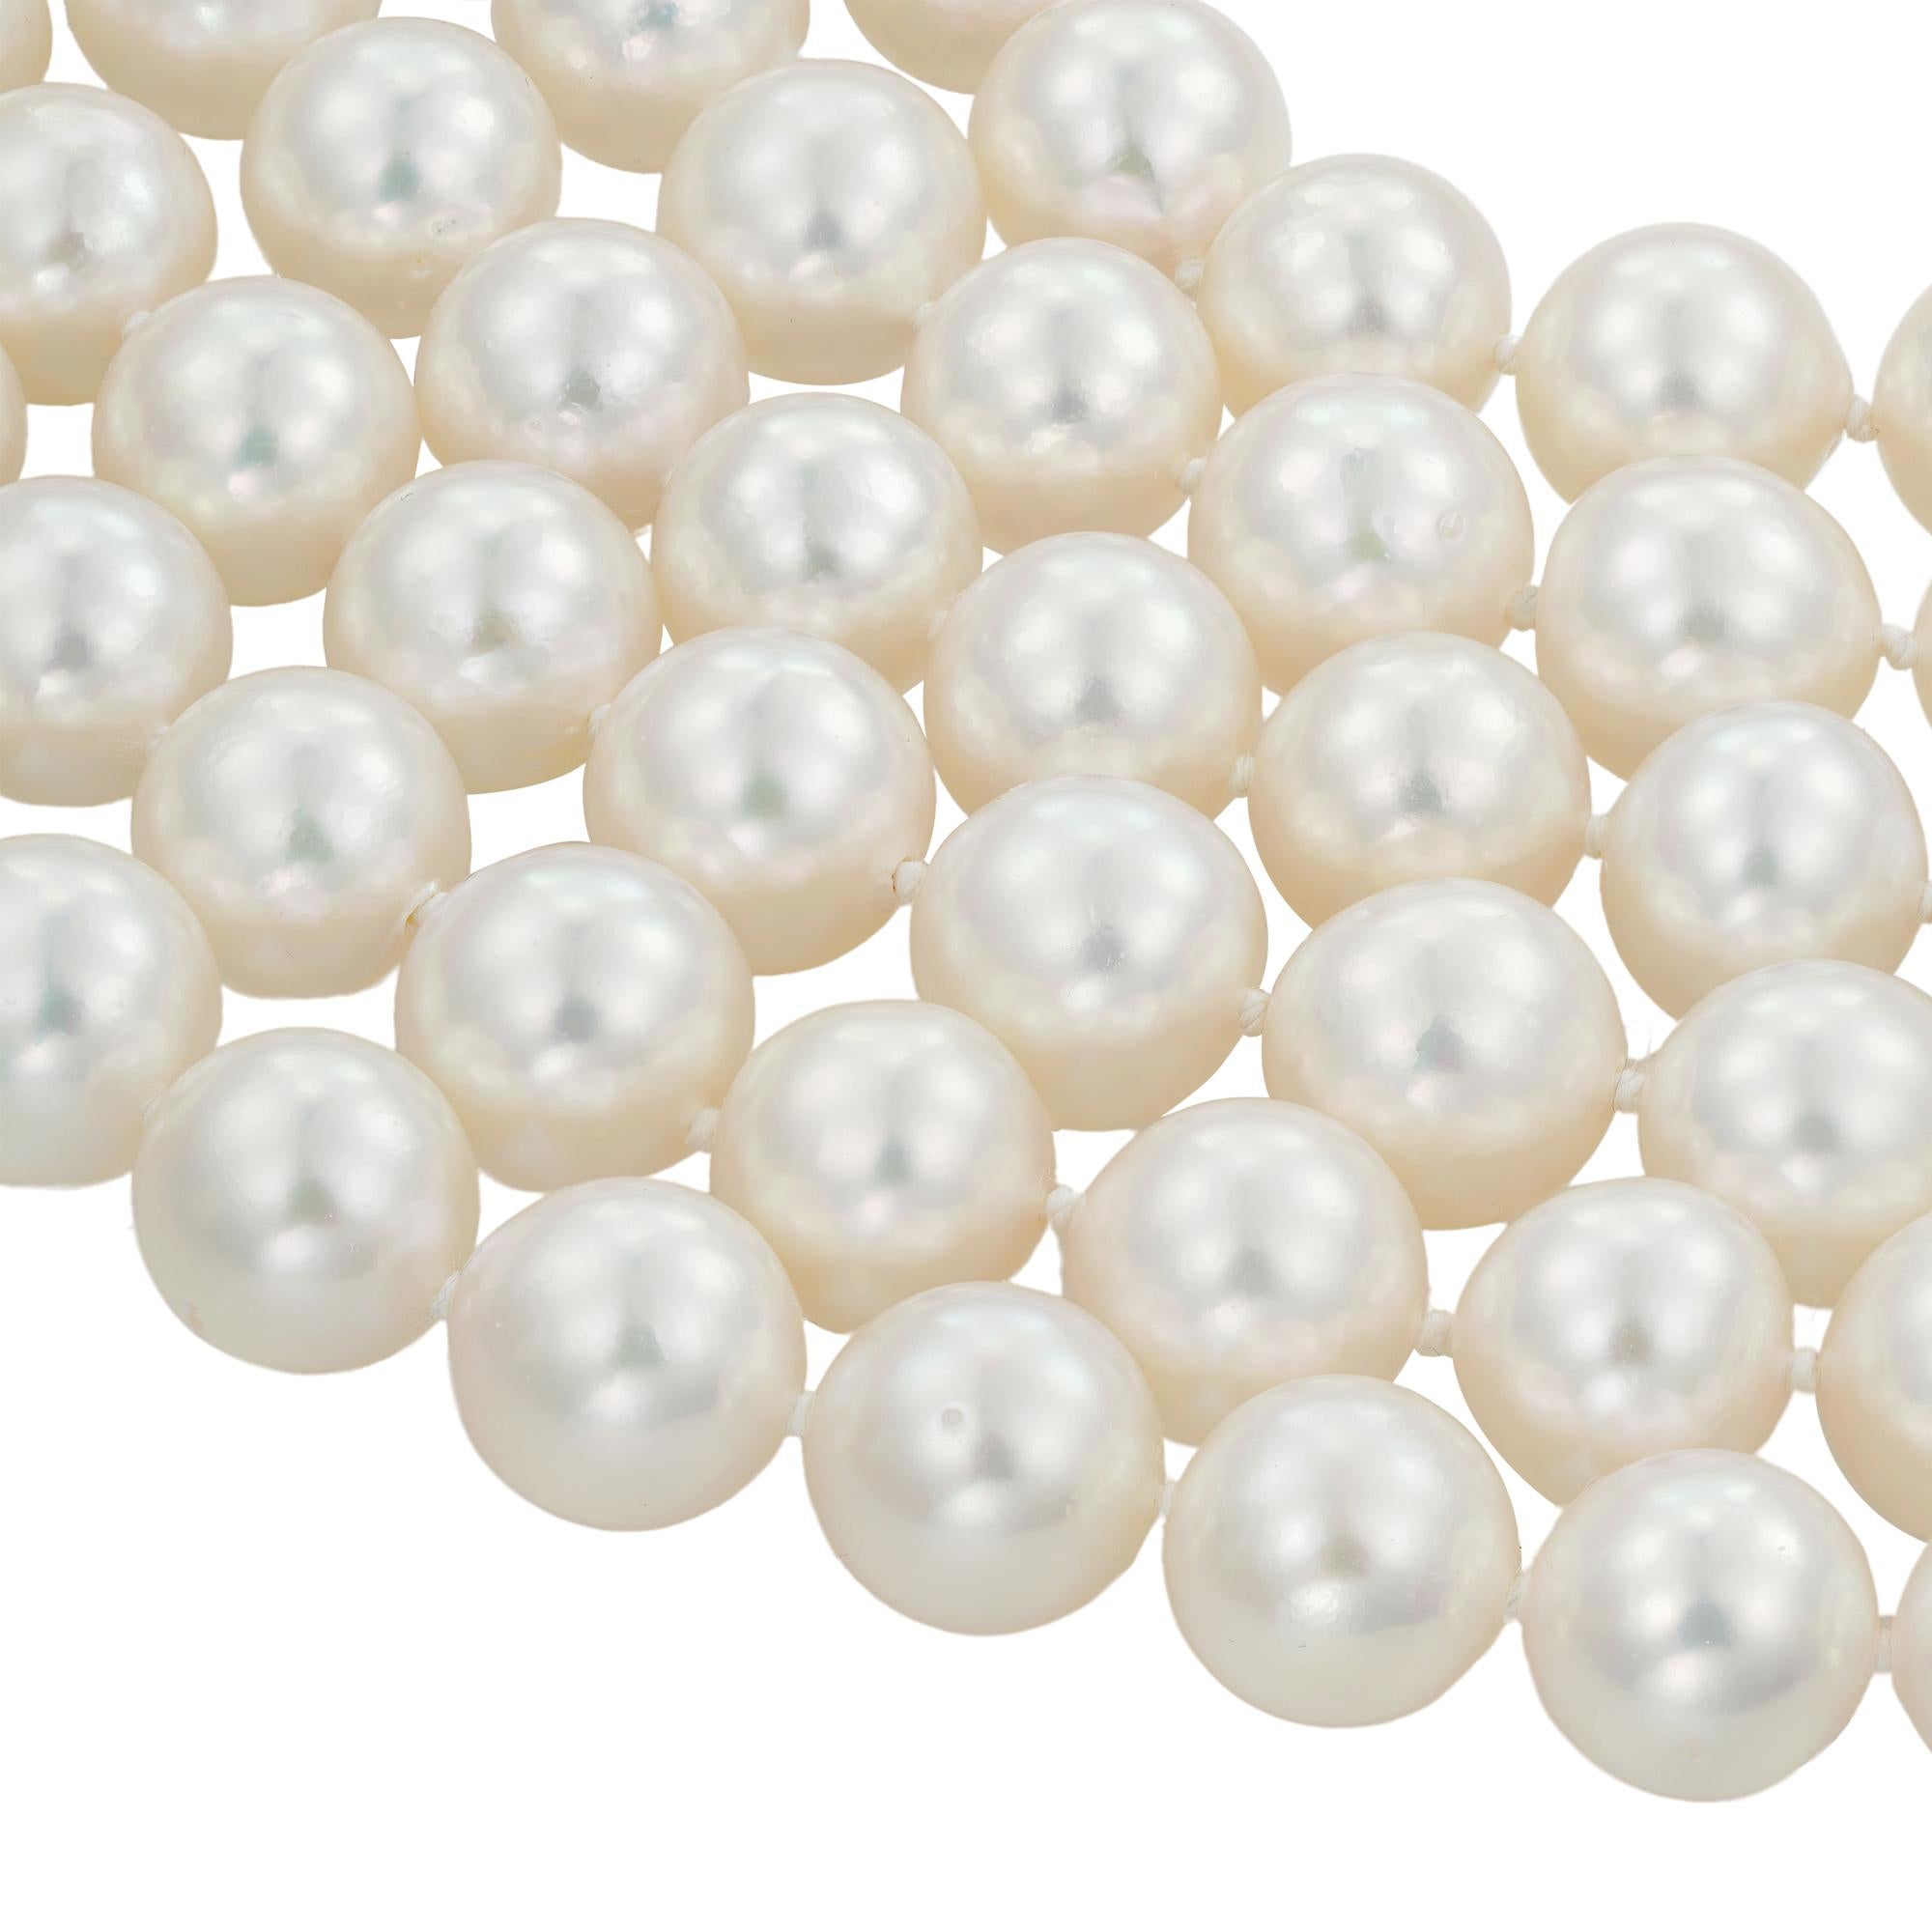 Un long collier de perles de culture d'eau salée, composé de cent vingt-six perles d'Akoya mesurant de 9,5 à 10 mm de diamètre, toutes enfilées et nouées en une seule rangée mesurant environ 128 cm de long, poids brut 161,6 grammes.

Ce collier de